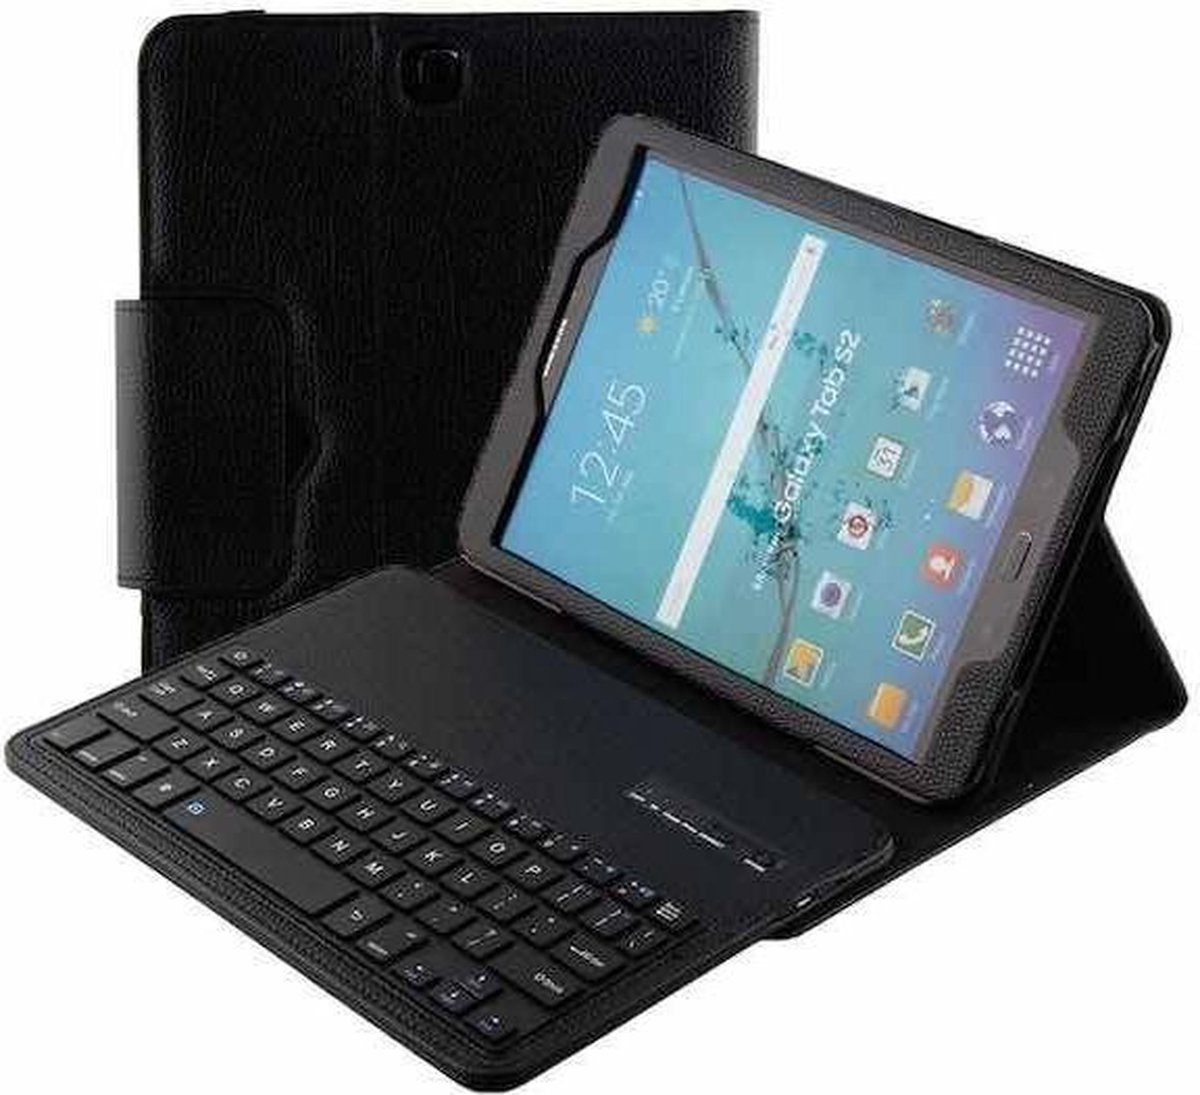 Sta in plaats daarvan op Goed opgeleid kanaal Samsung Galaxy Tab S2 9.7 bluetooth toetsenbord hoes zwart | bol.com